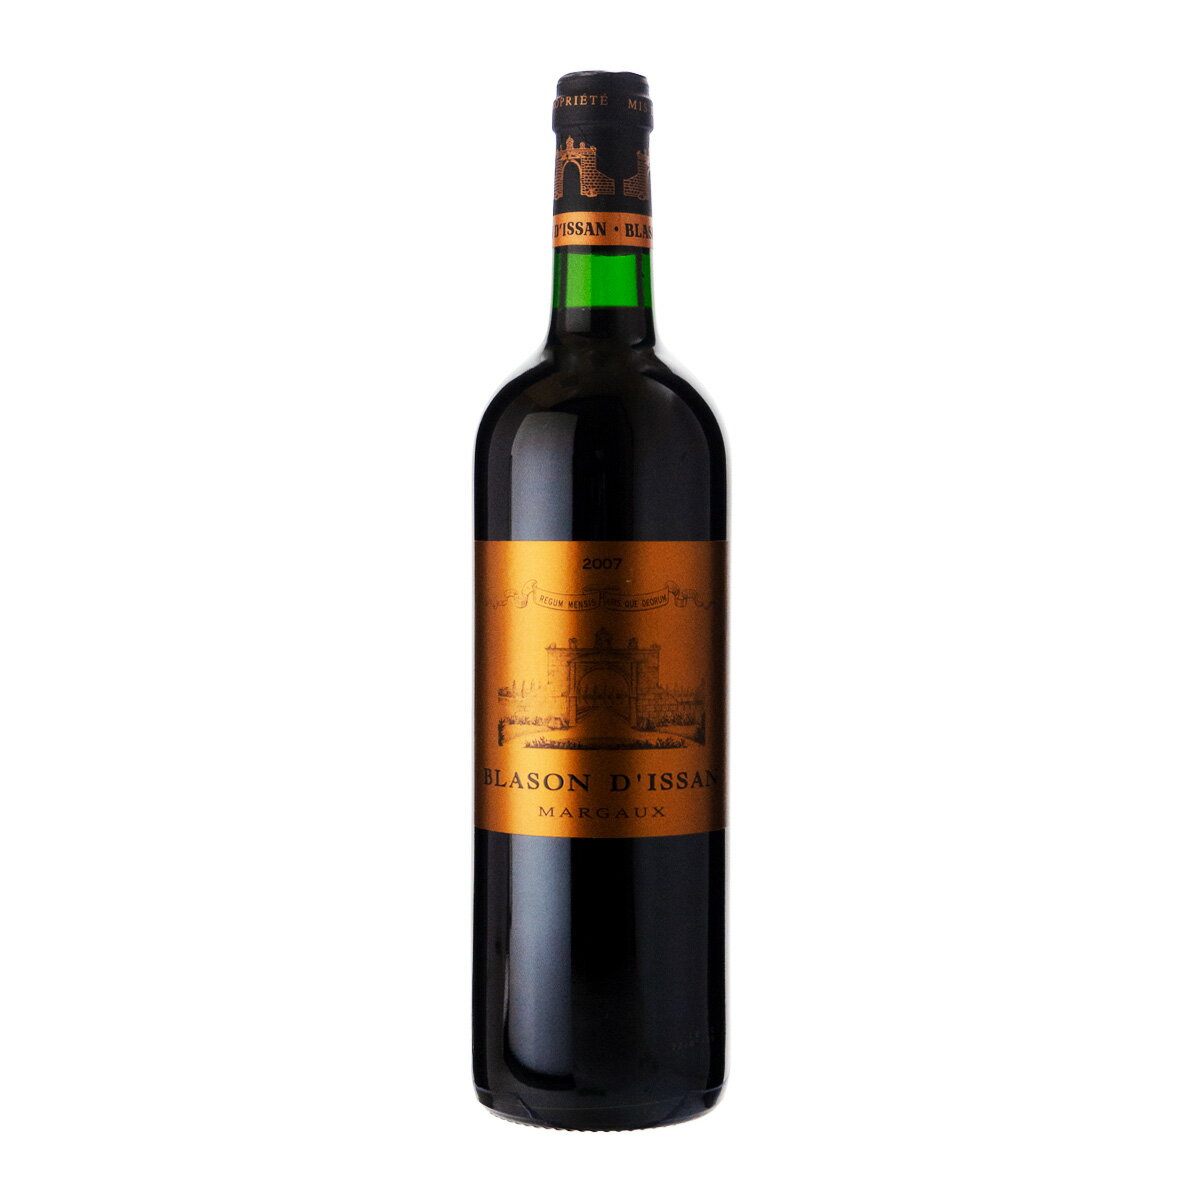 シャトーディサン ブラゾン ディサン マルゴー 2007 750ml 赤ワイン フランス 格付け第3級セカンド (z03-4250)